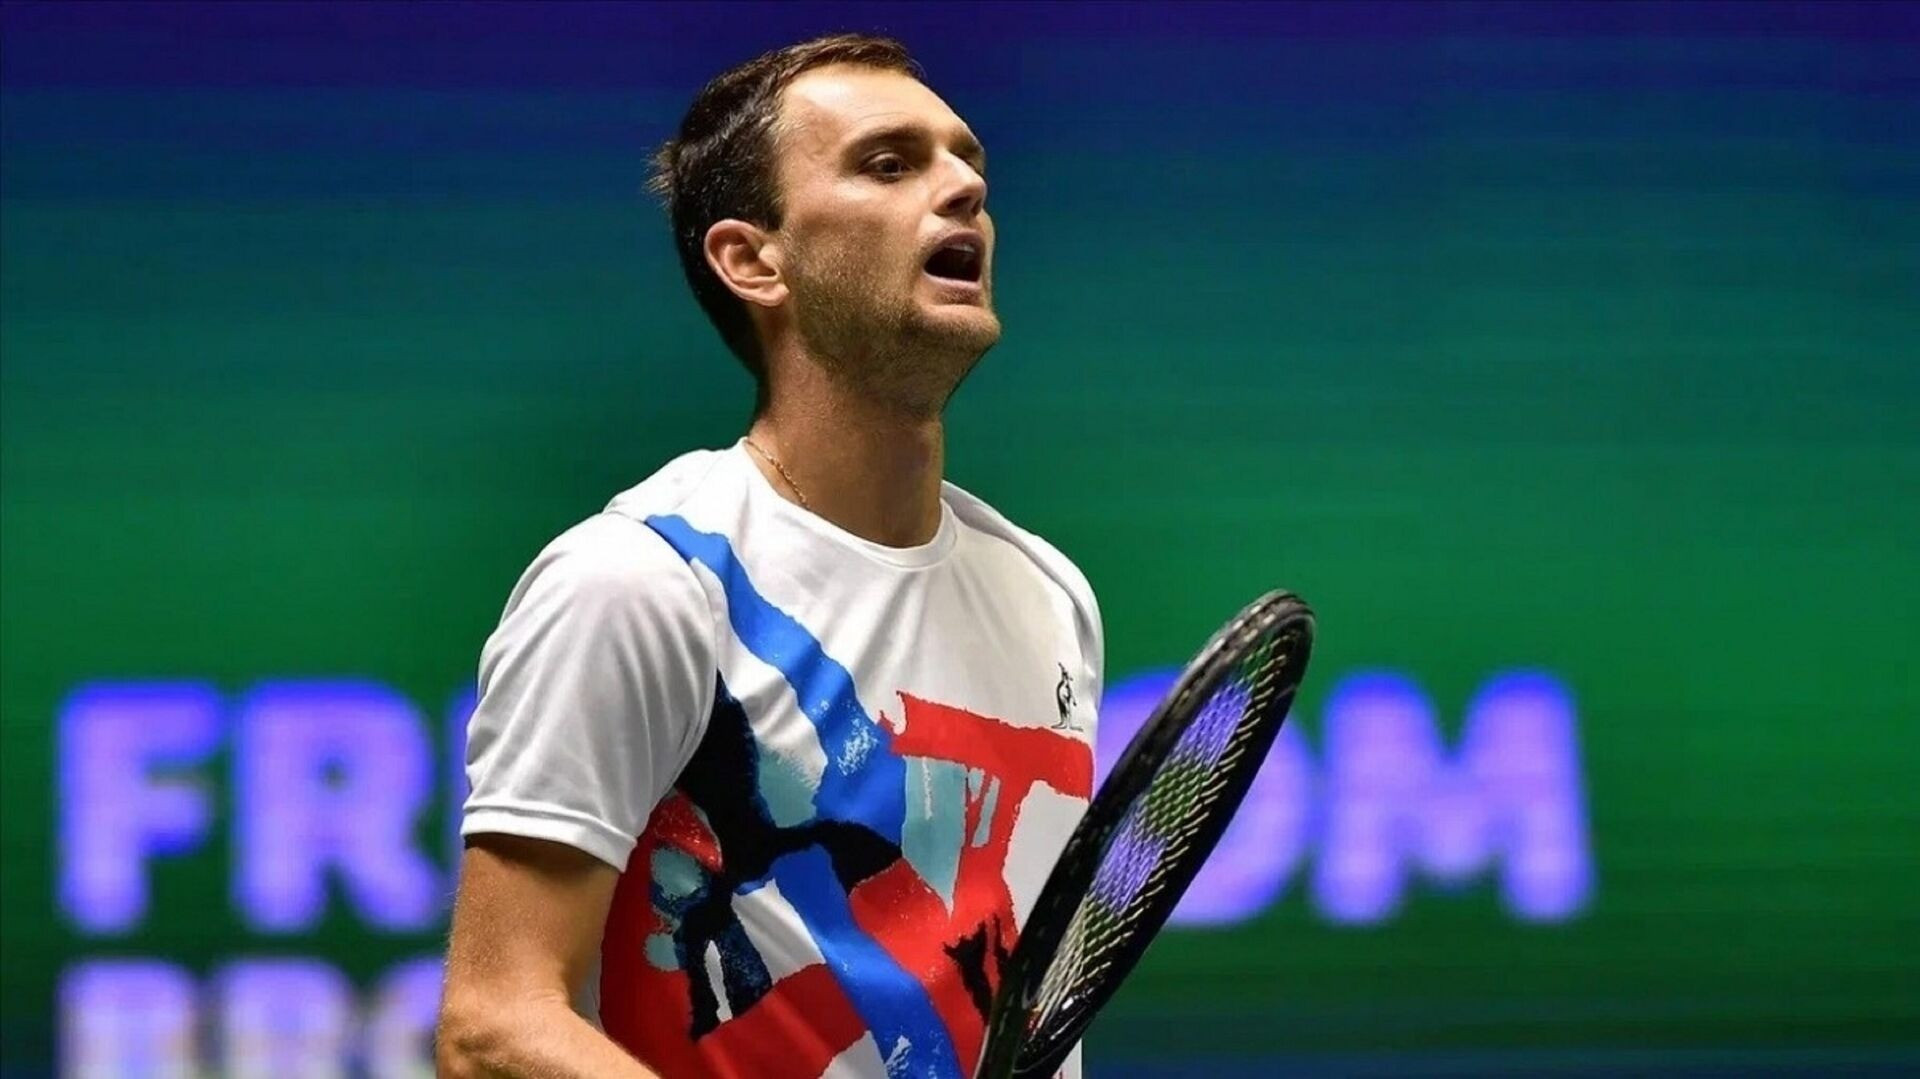 Вы сейчас просматриваете Теннис: Александр Недовесов выиграл турнир в Португалии